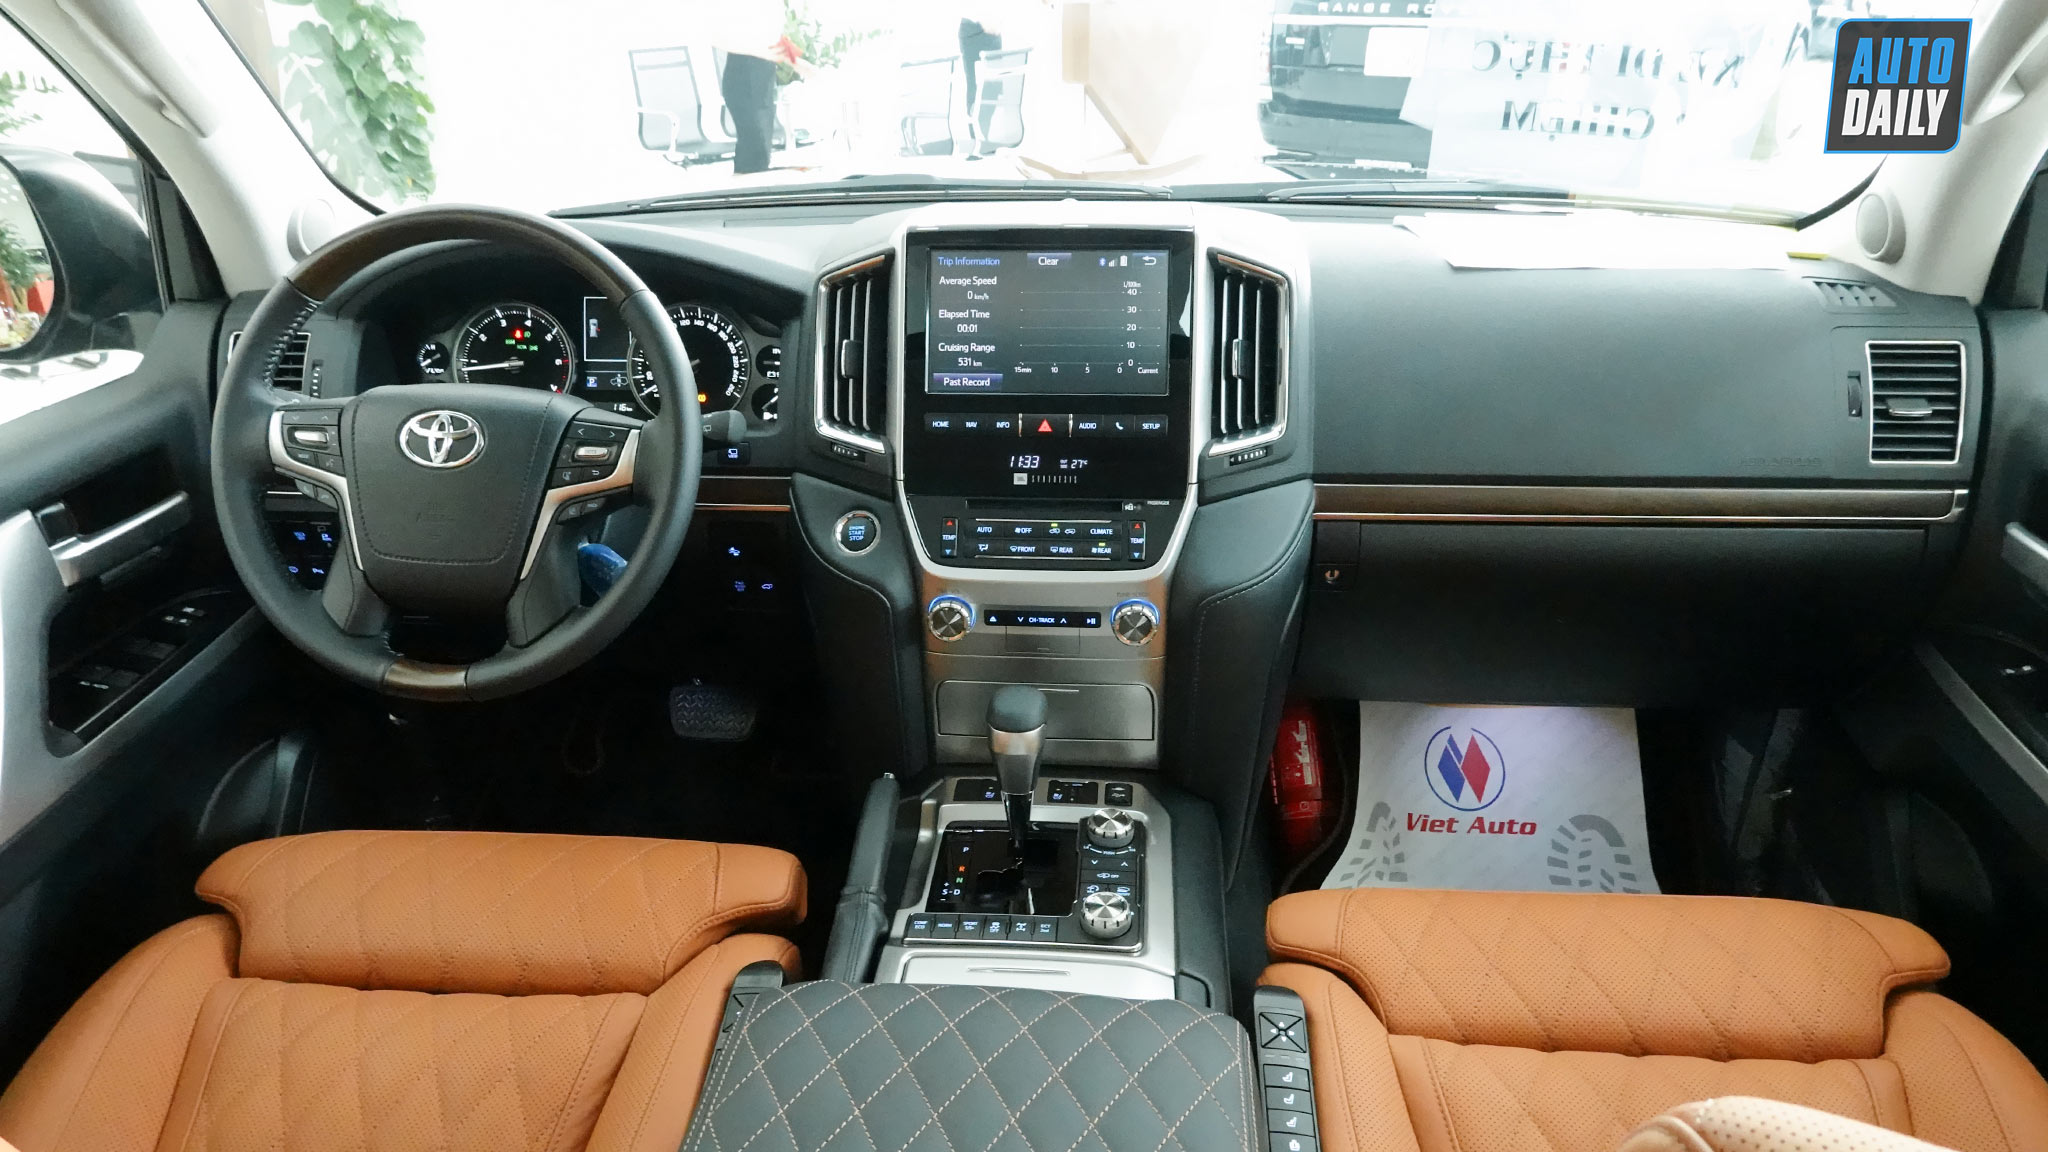 Chi tiết Toyota Land Cruiser MBS 2020 nội thất đẹp như Lexus LX570